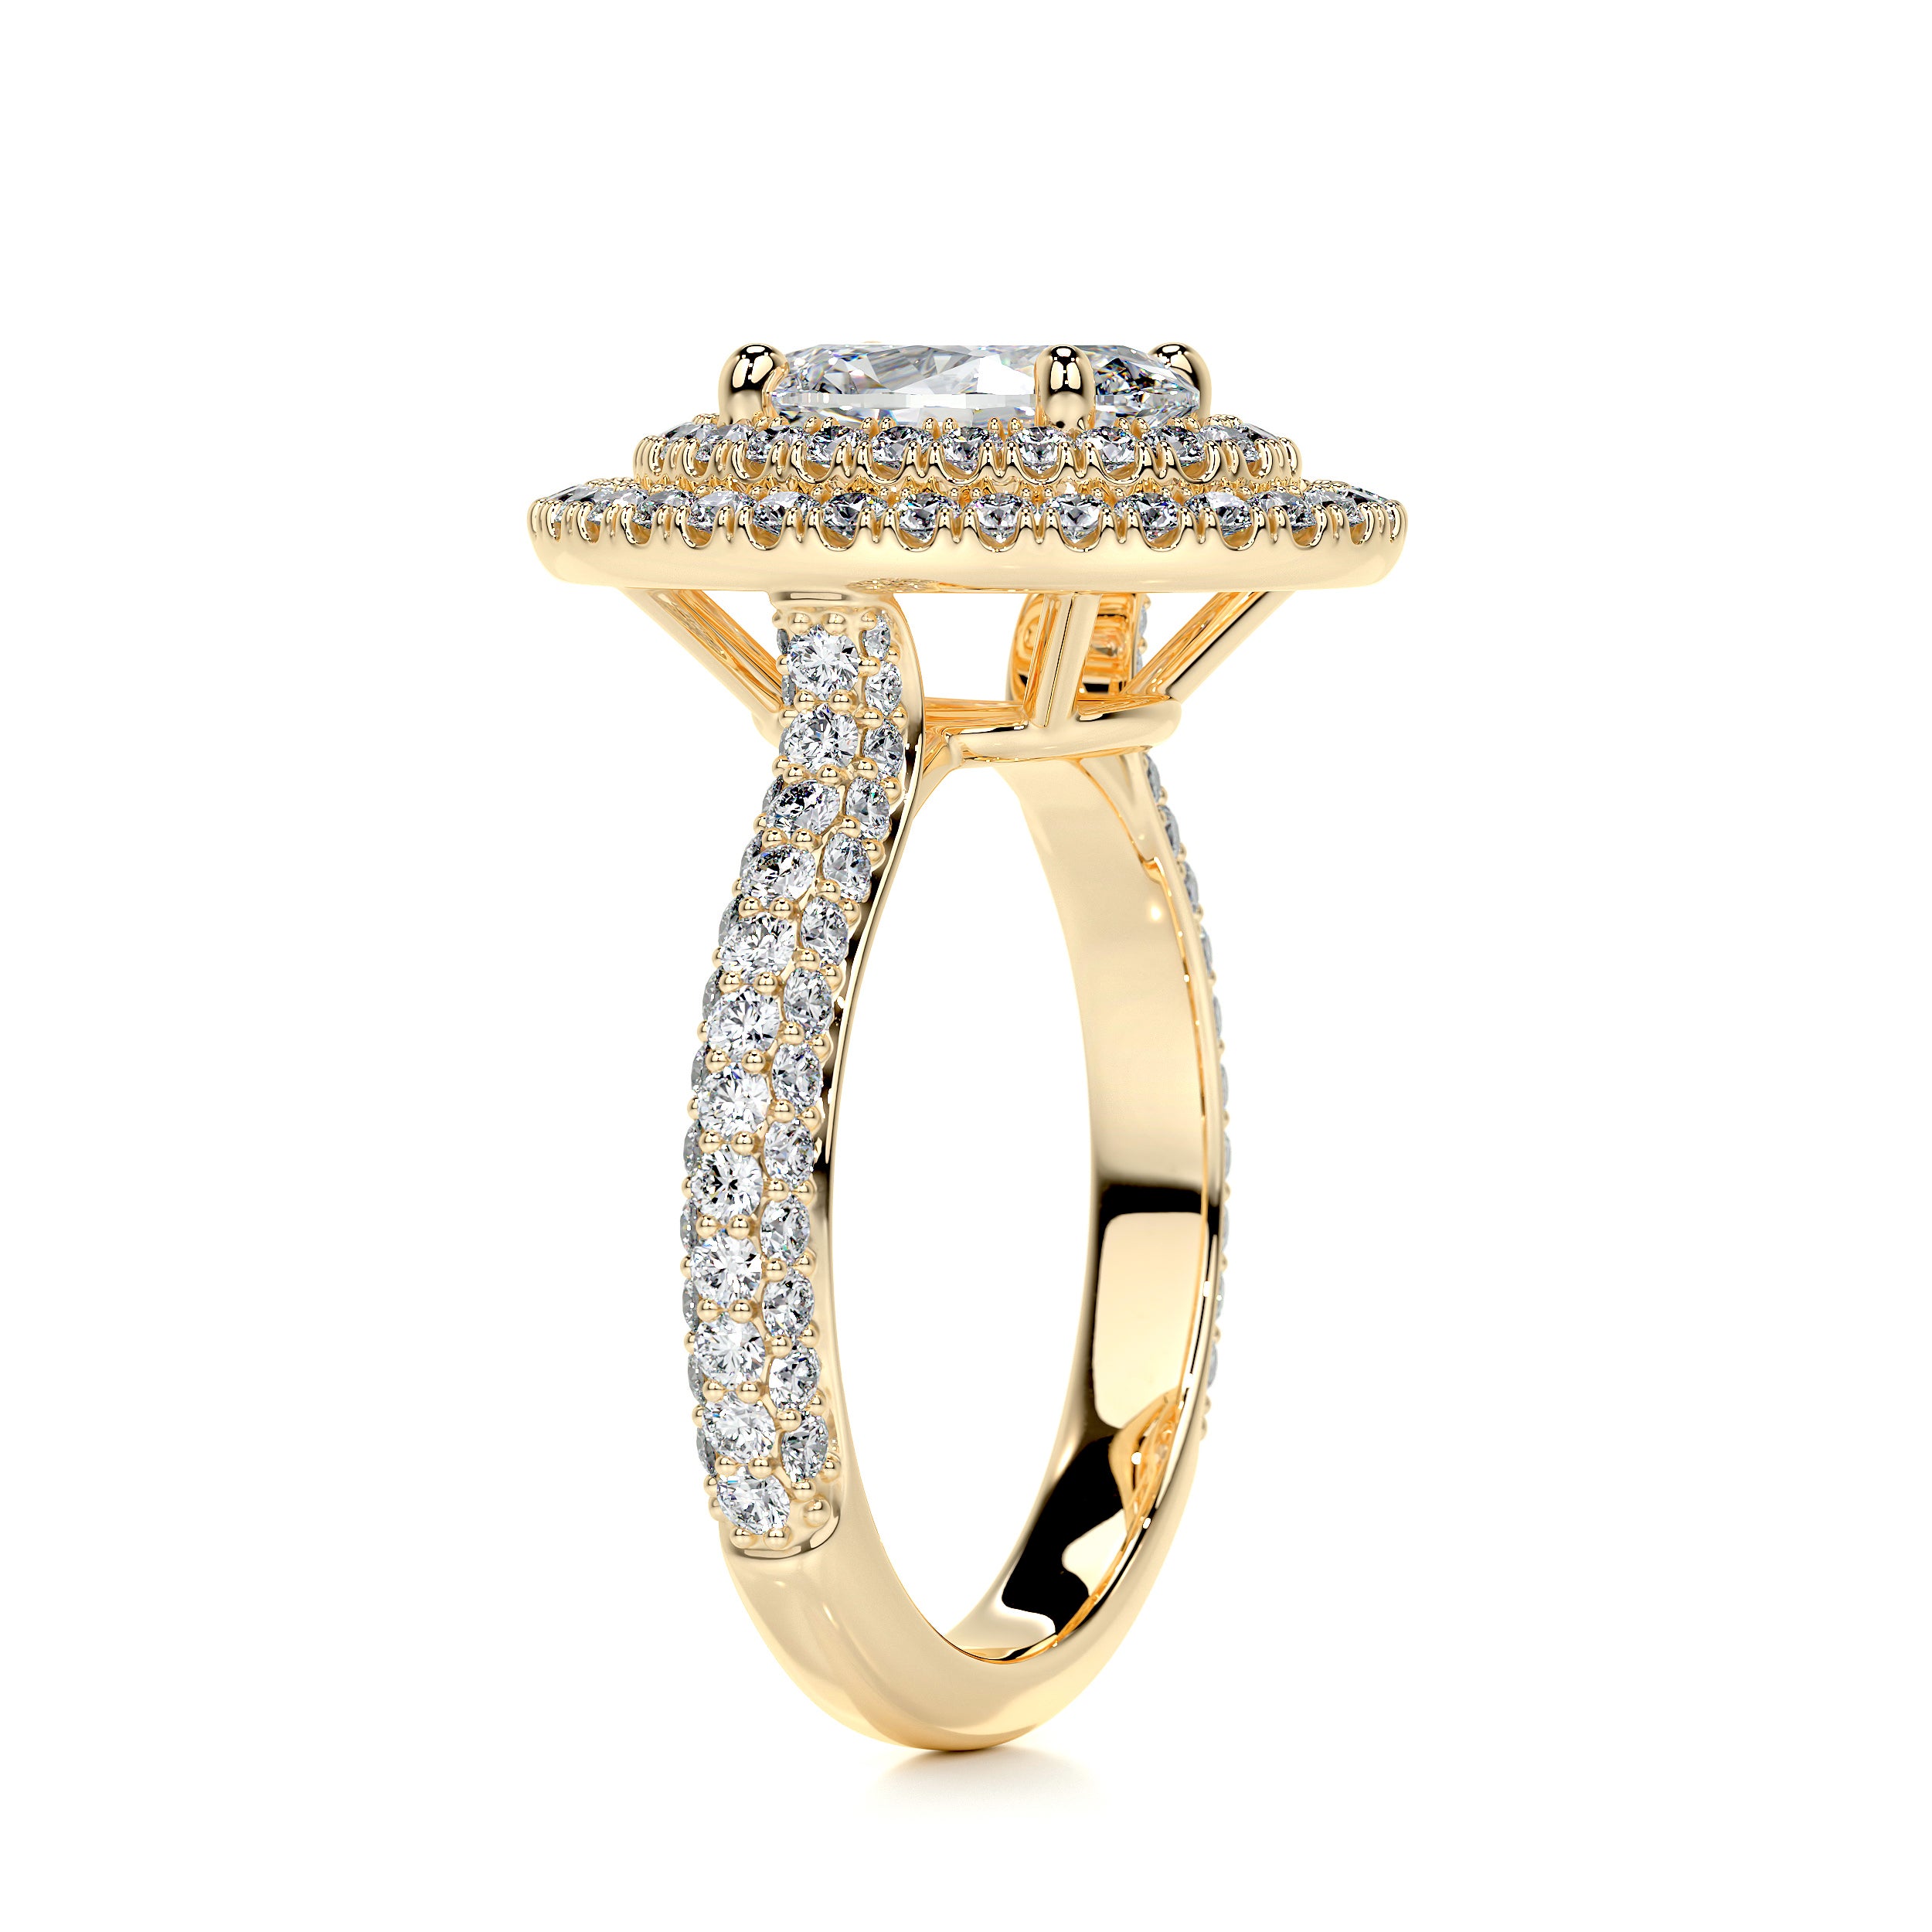 Nora Diamond Engagement Ring   (2.35 Carat) -18K Yellow Gold